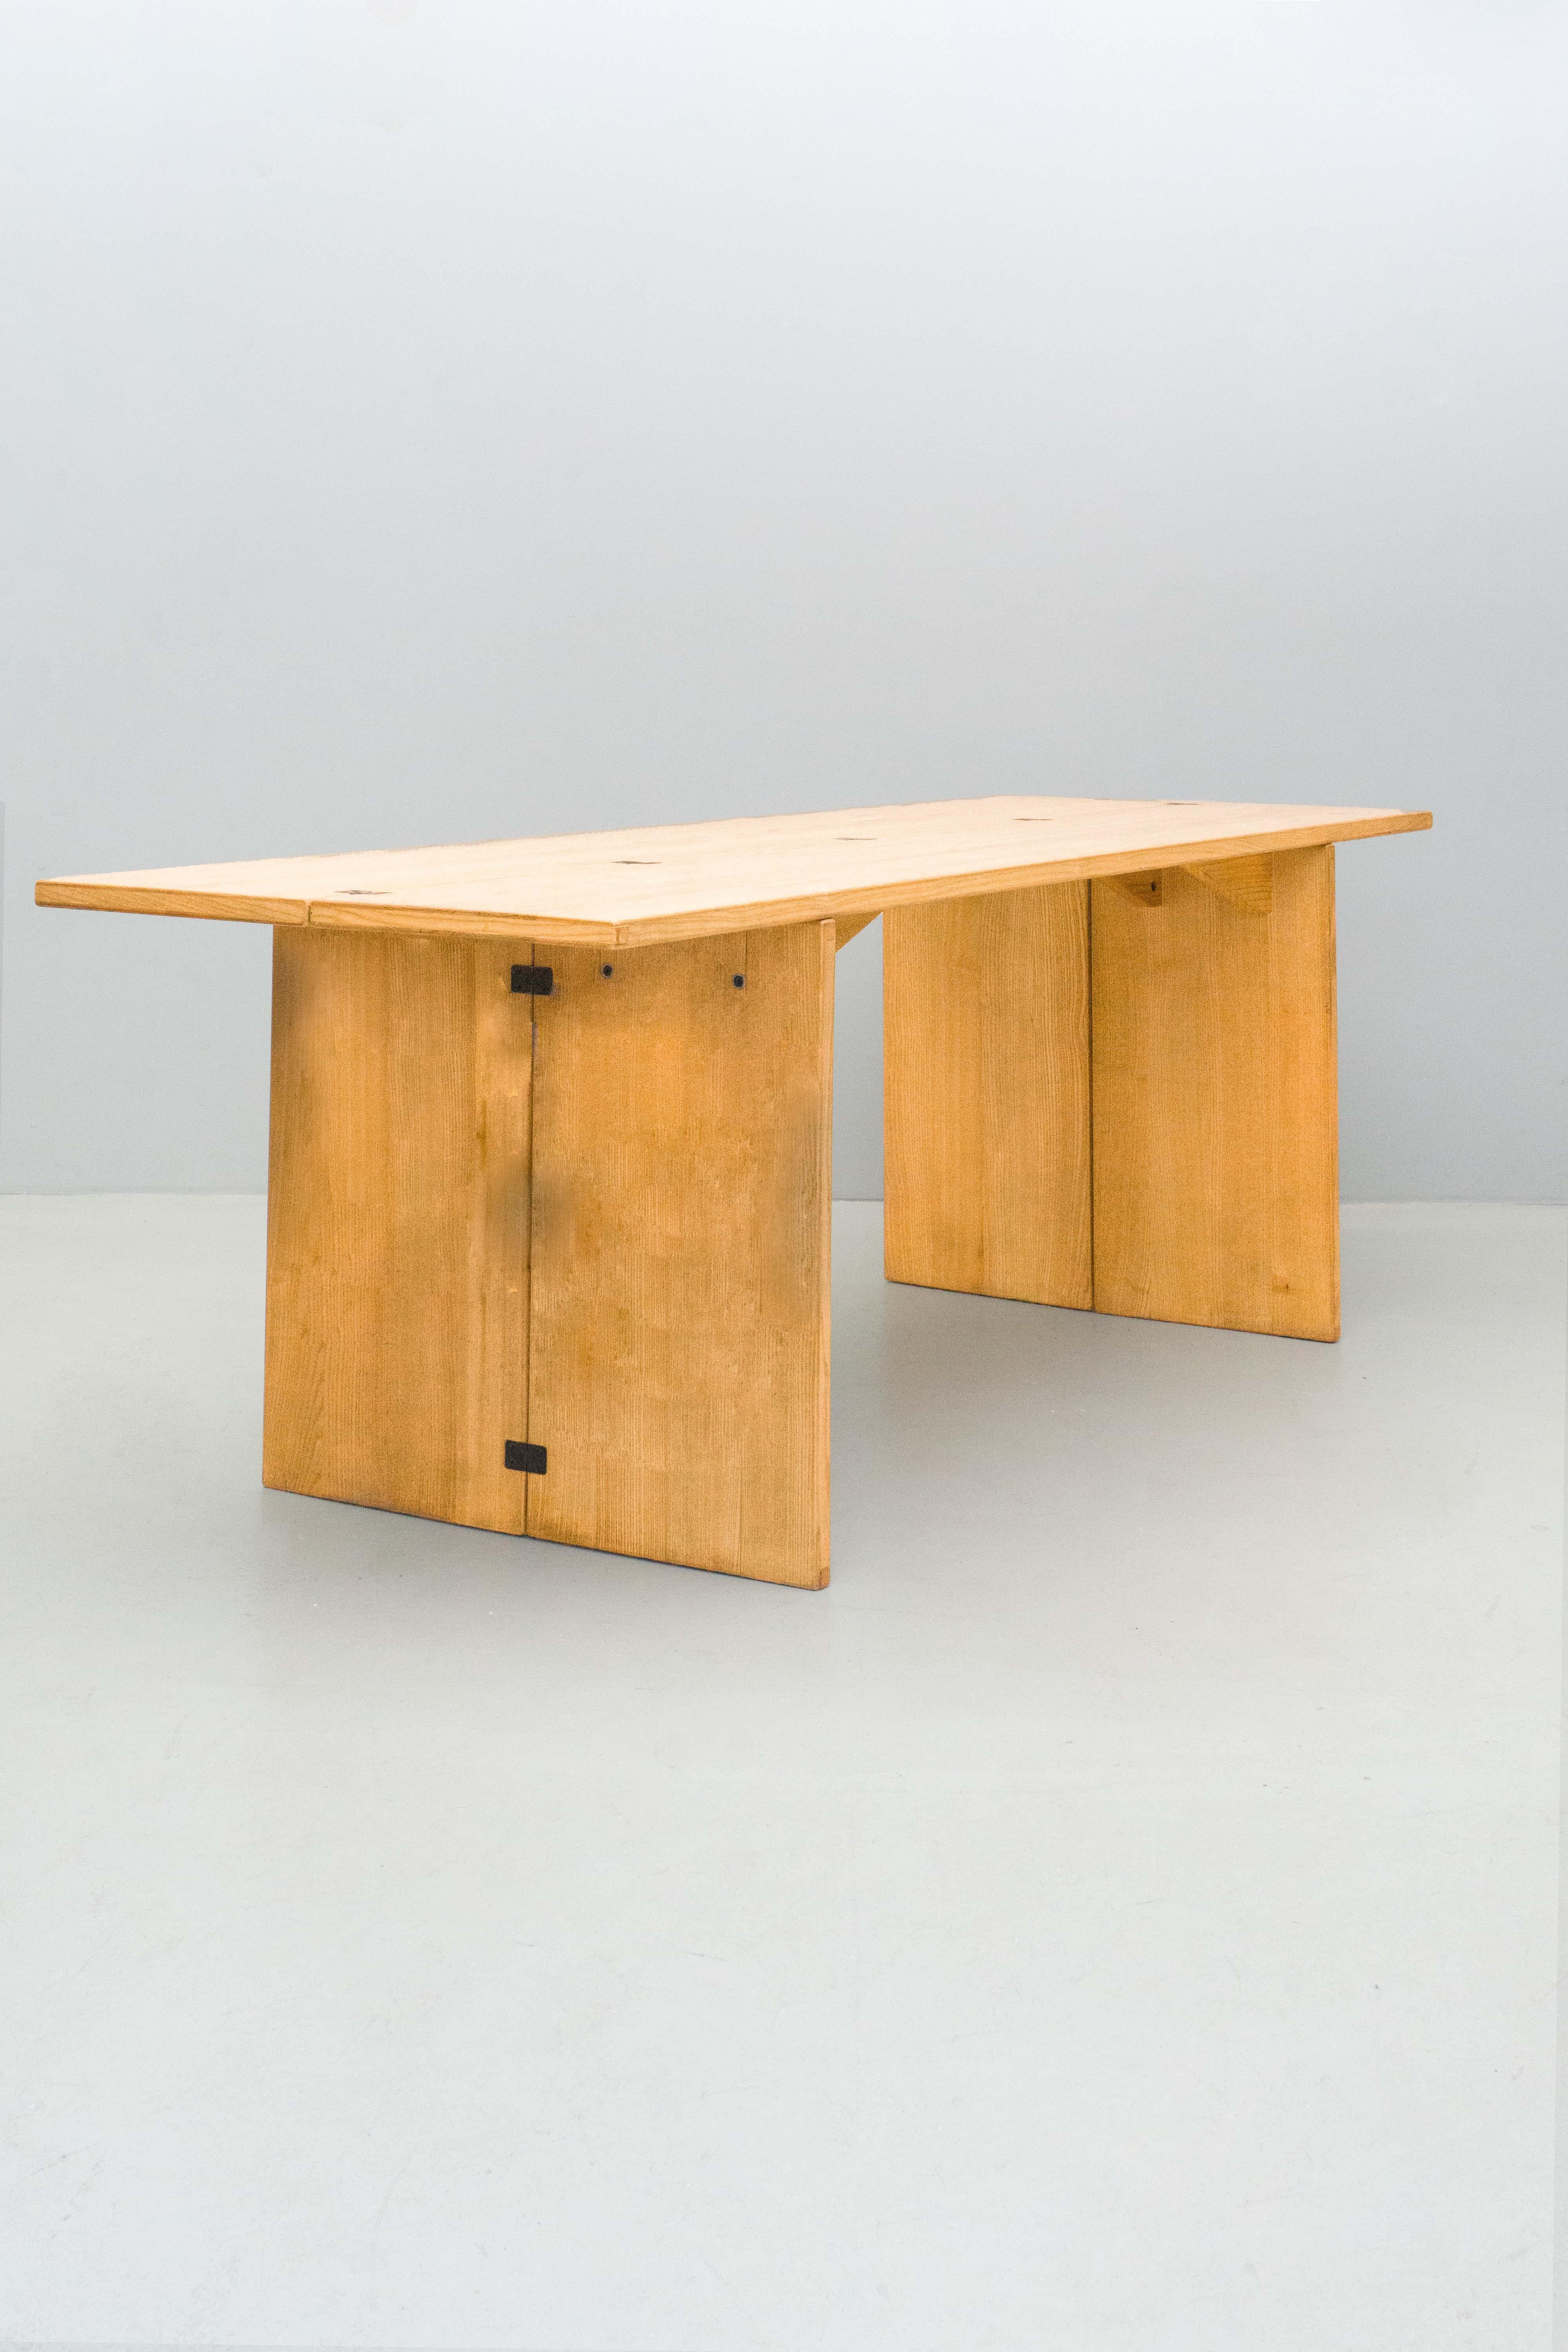 Cette table peut être utilisée comme table de console ou comme table de salle à manger ou bureau élégant. C'est une pièce pratique et élégante. Qu'est-ce qui le rend si pratique ? Vous pouvez plier les pieds et aussi la surface de la table pour